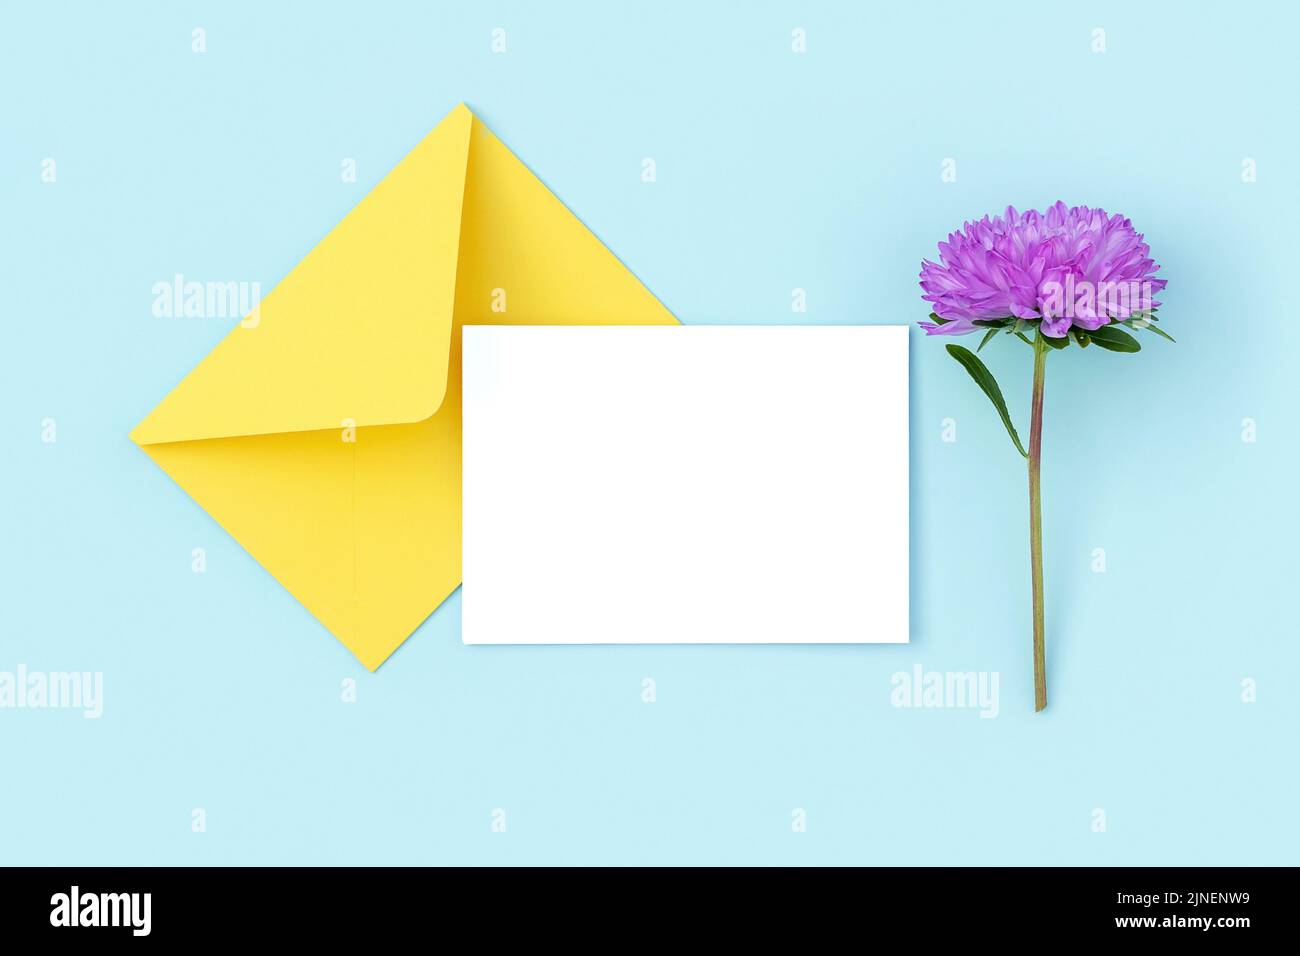 Cartoncino bianco, busta gialla e fiore viola su sfondo blu. Stile minimalista. Vista dall'alto Flat Lay Mockup. Foto Stock